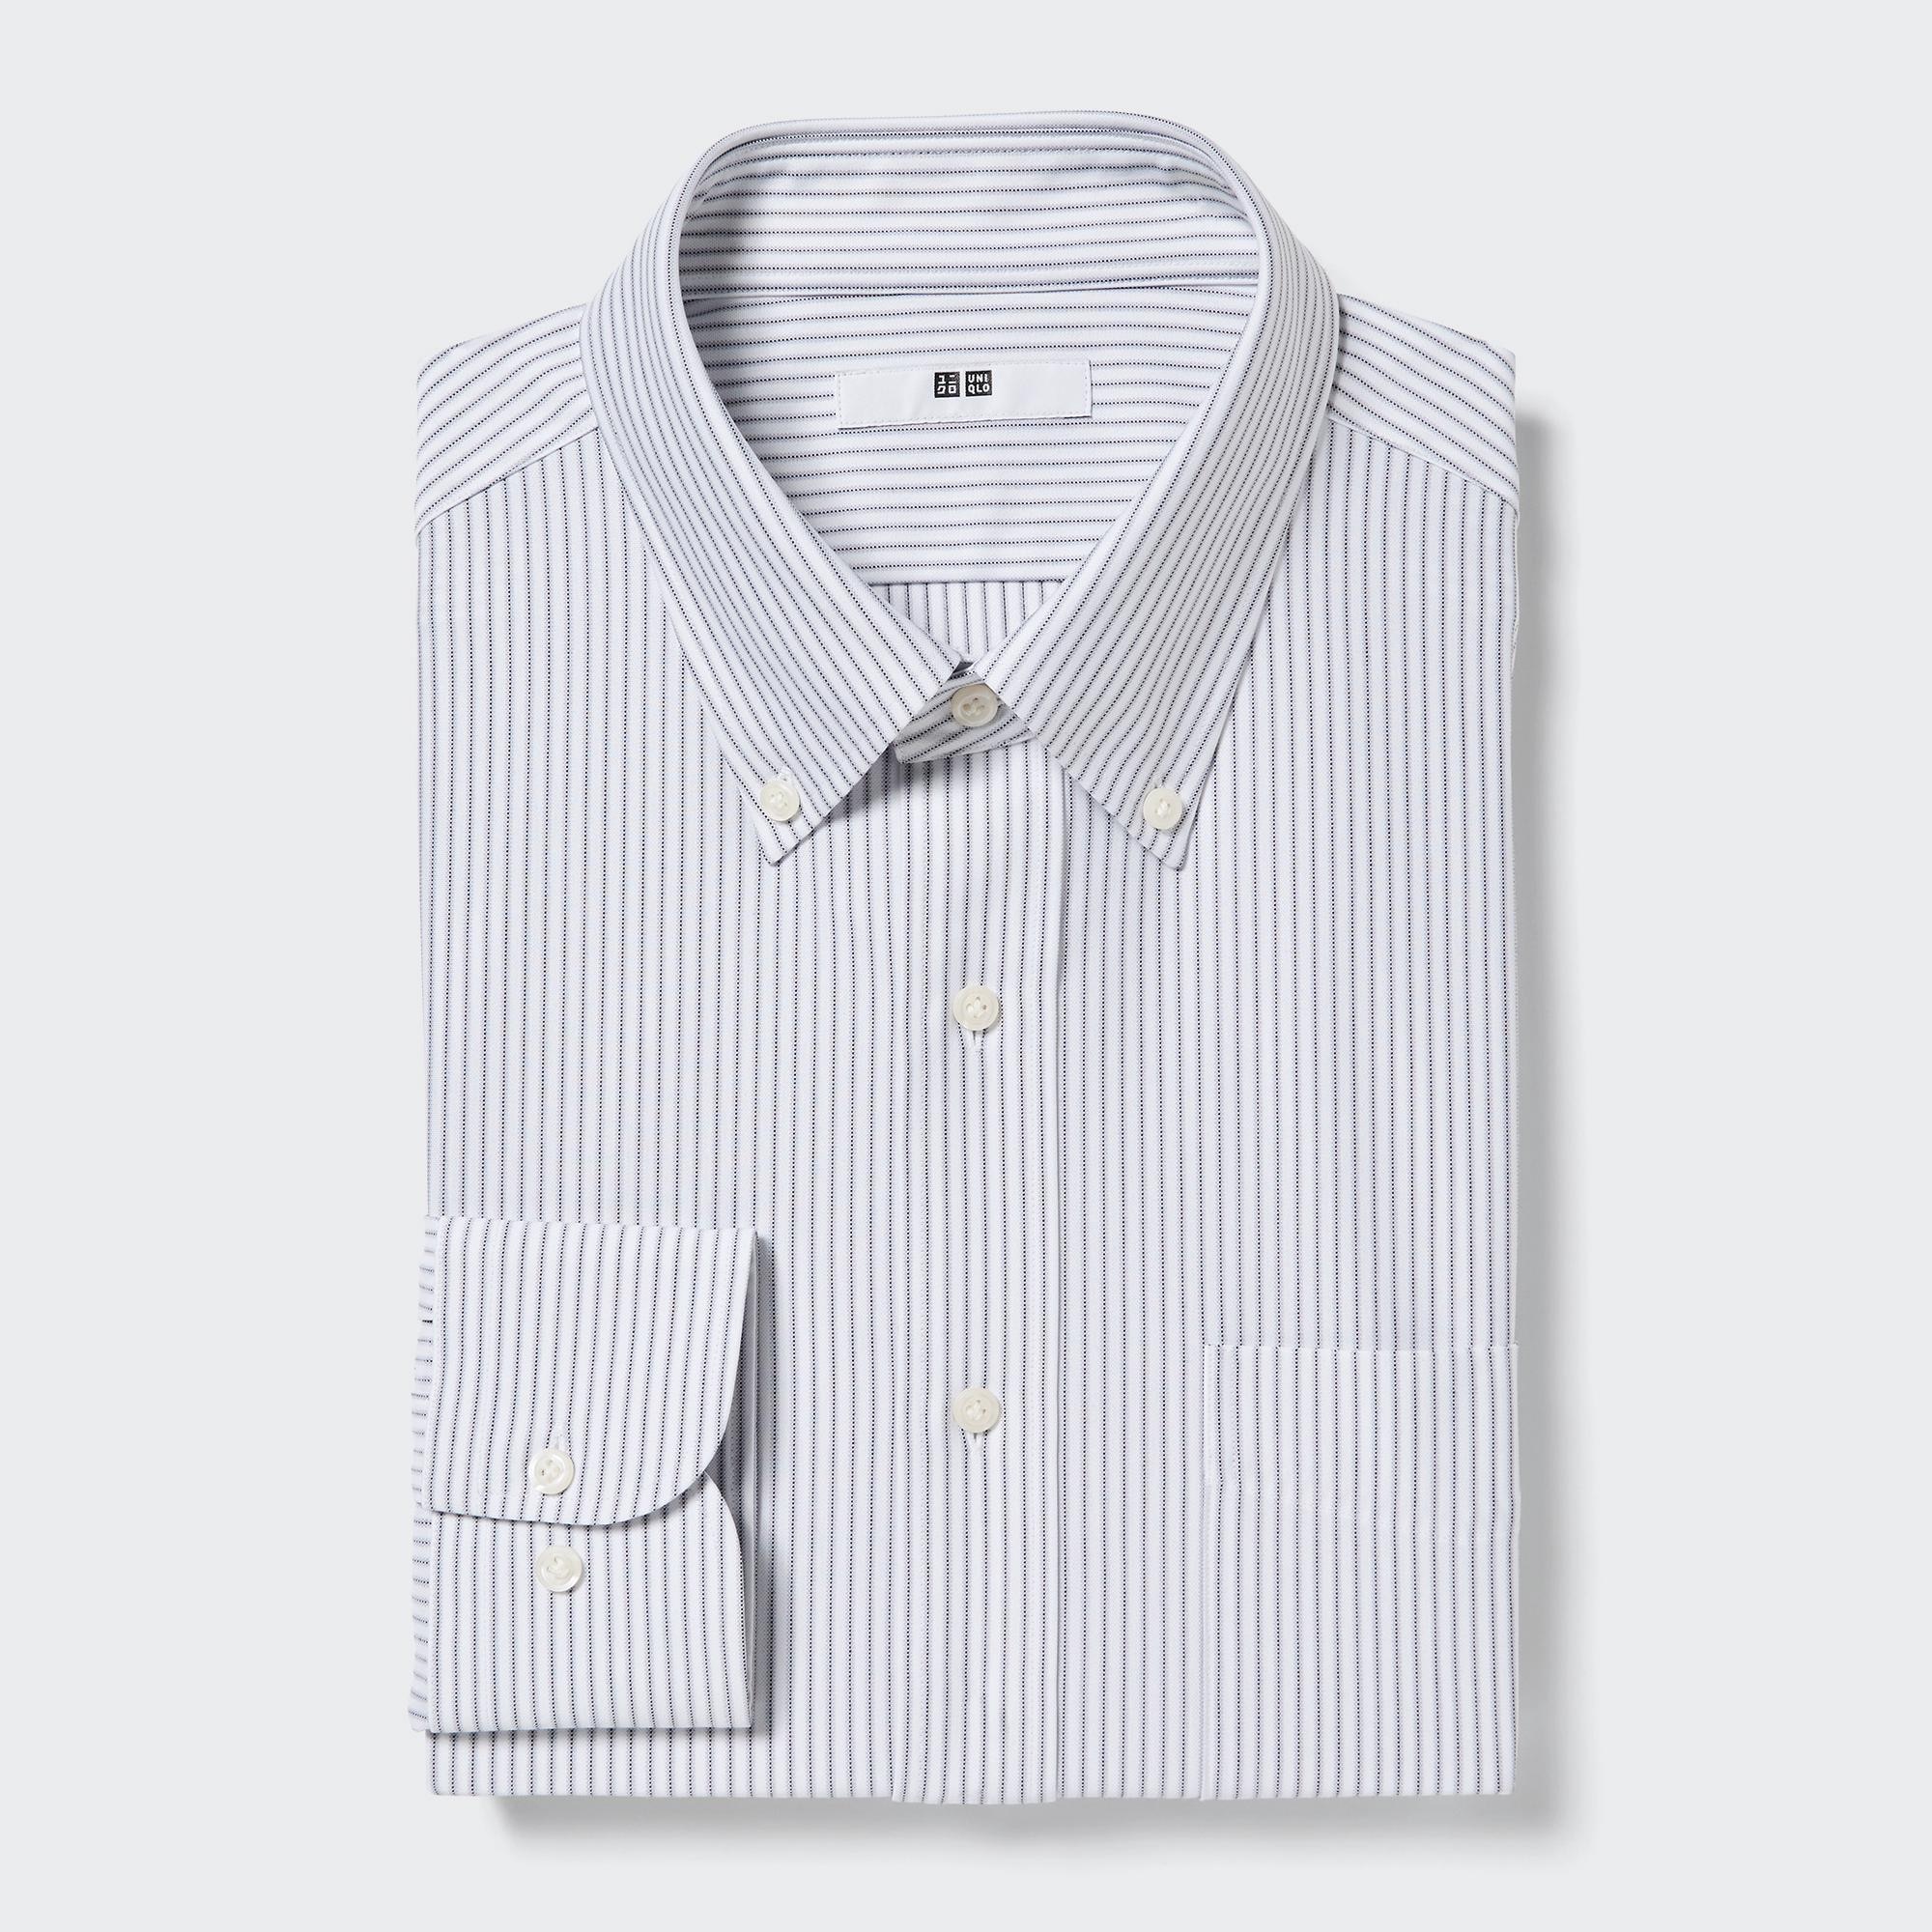 ワイシャツ グレーの関連商品 | ユニクロ